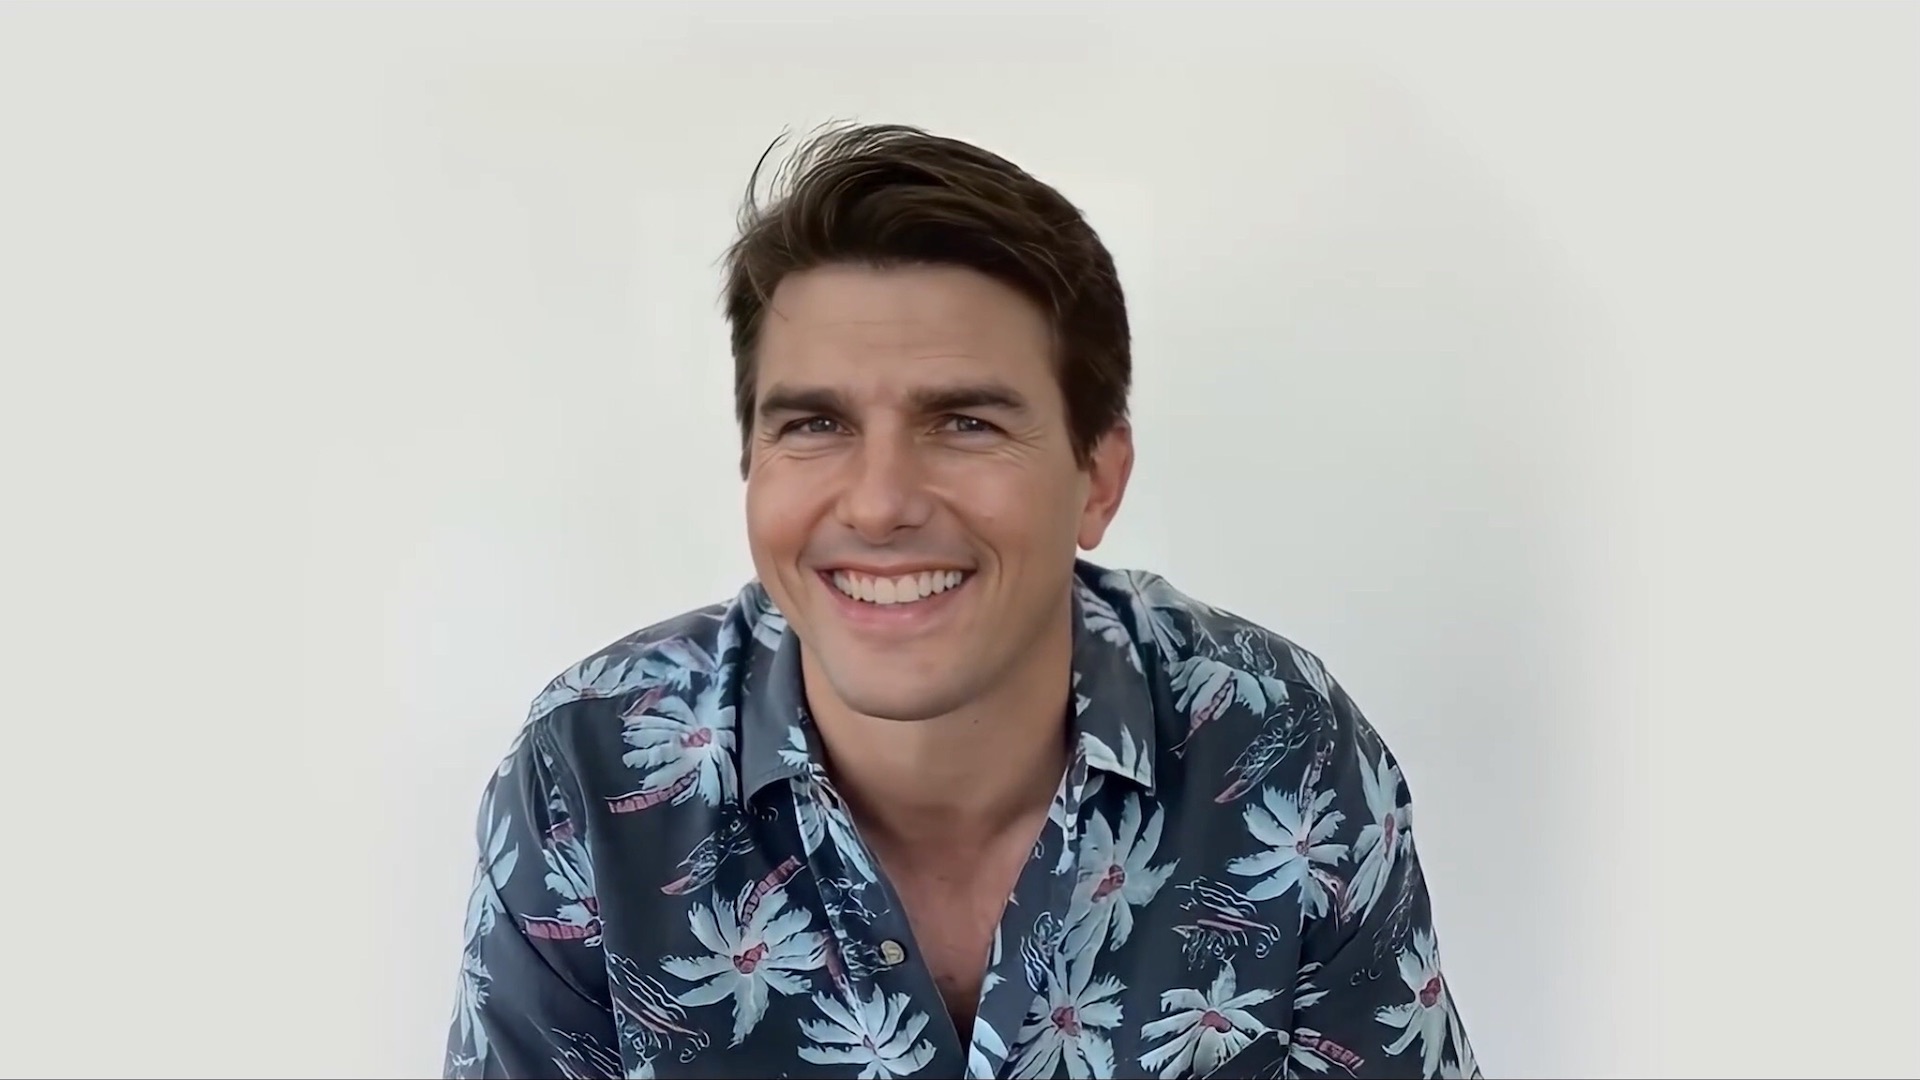 Tvář Toma Cruise v deepfake videu z TikToku